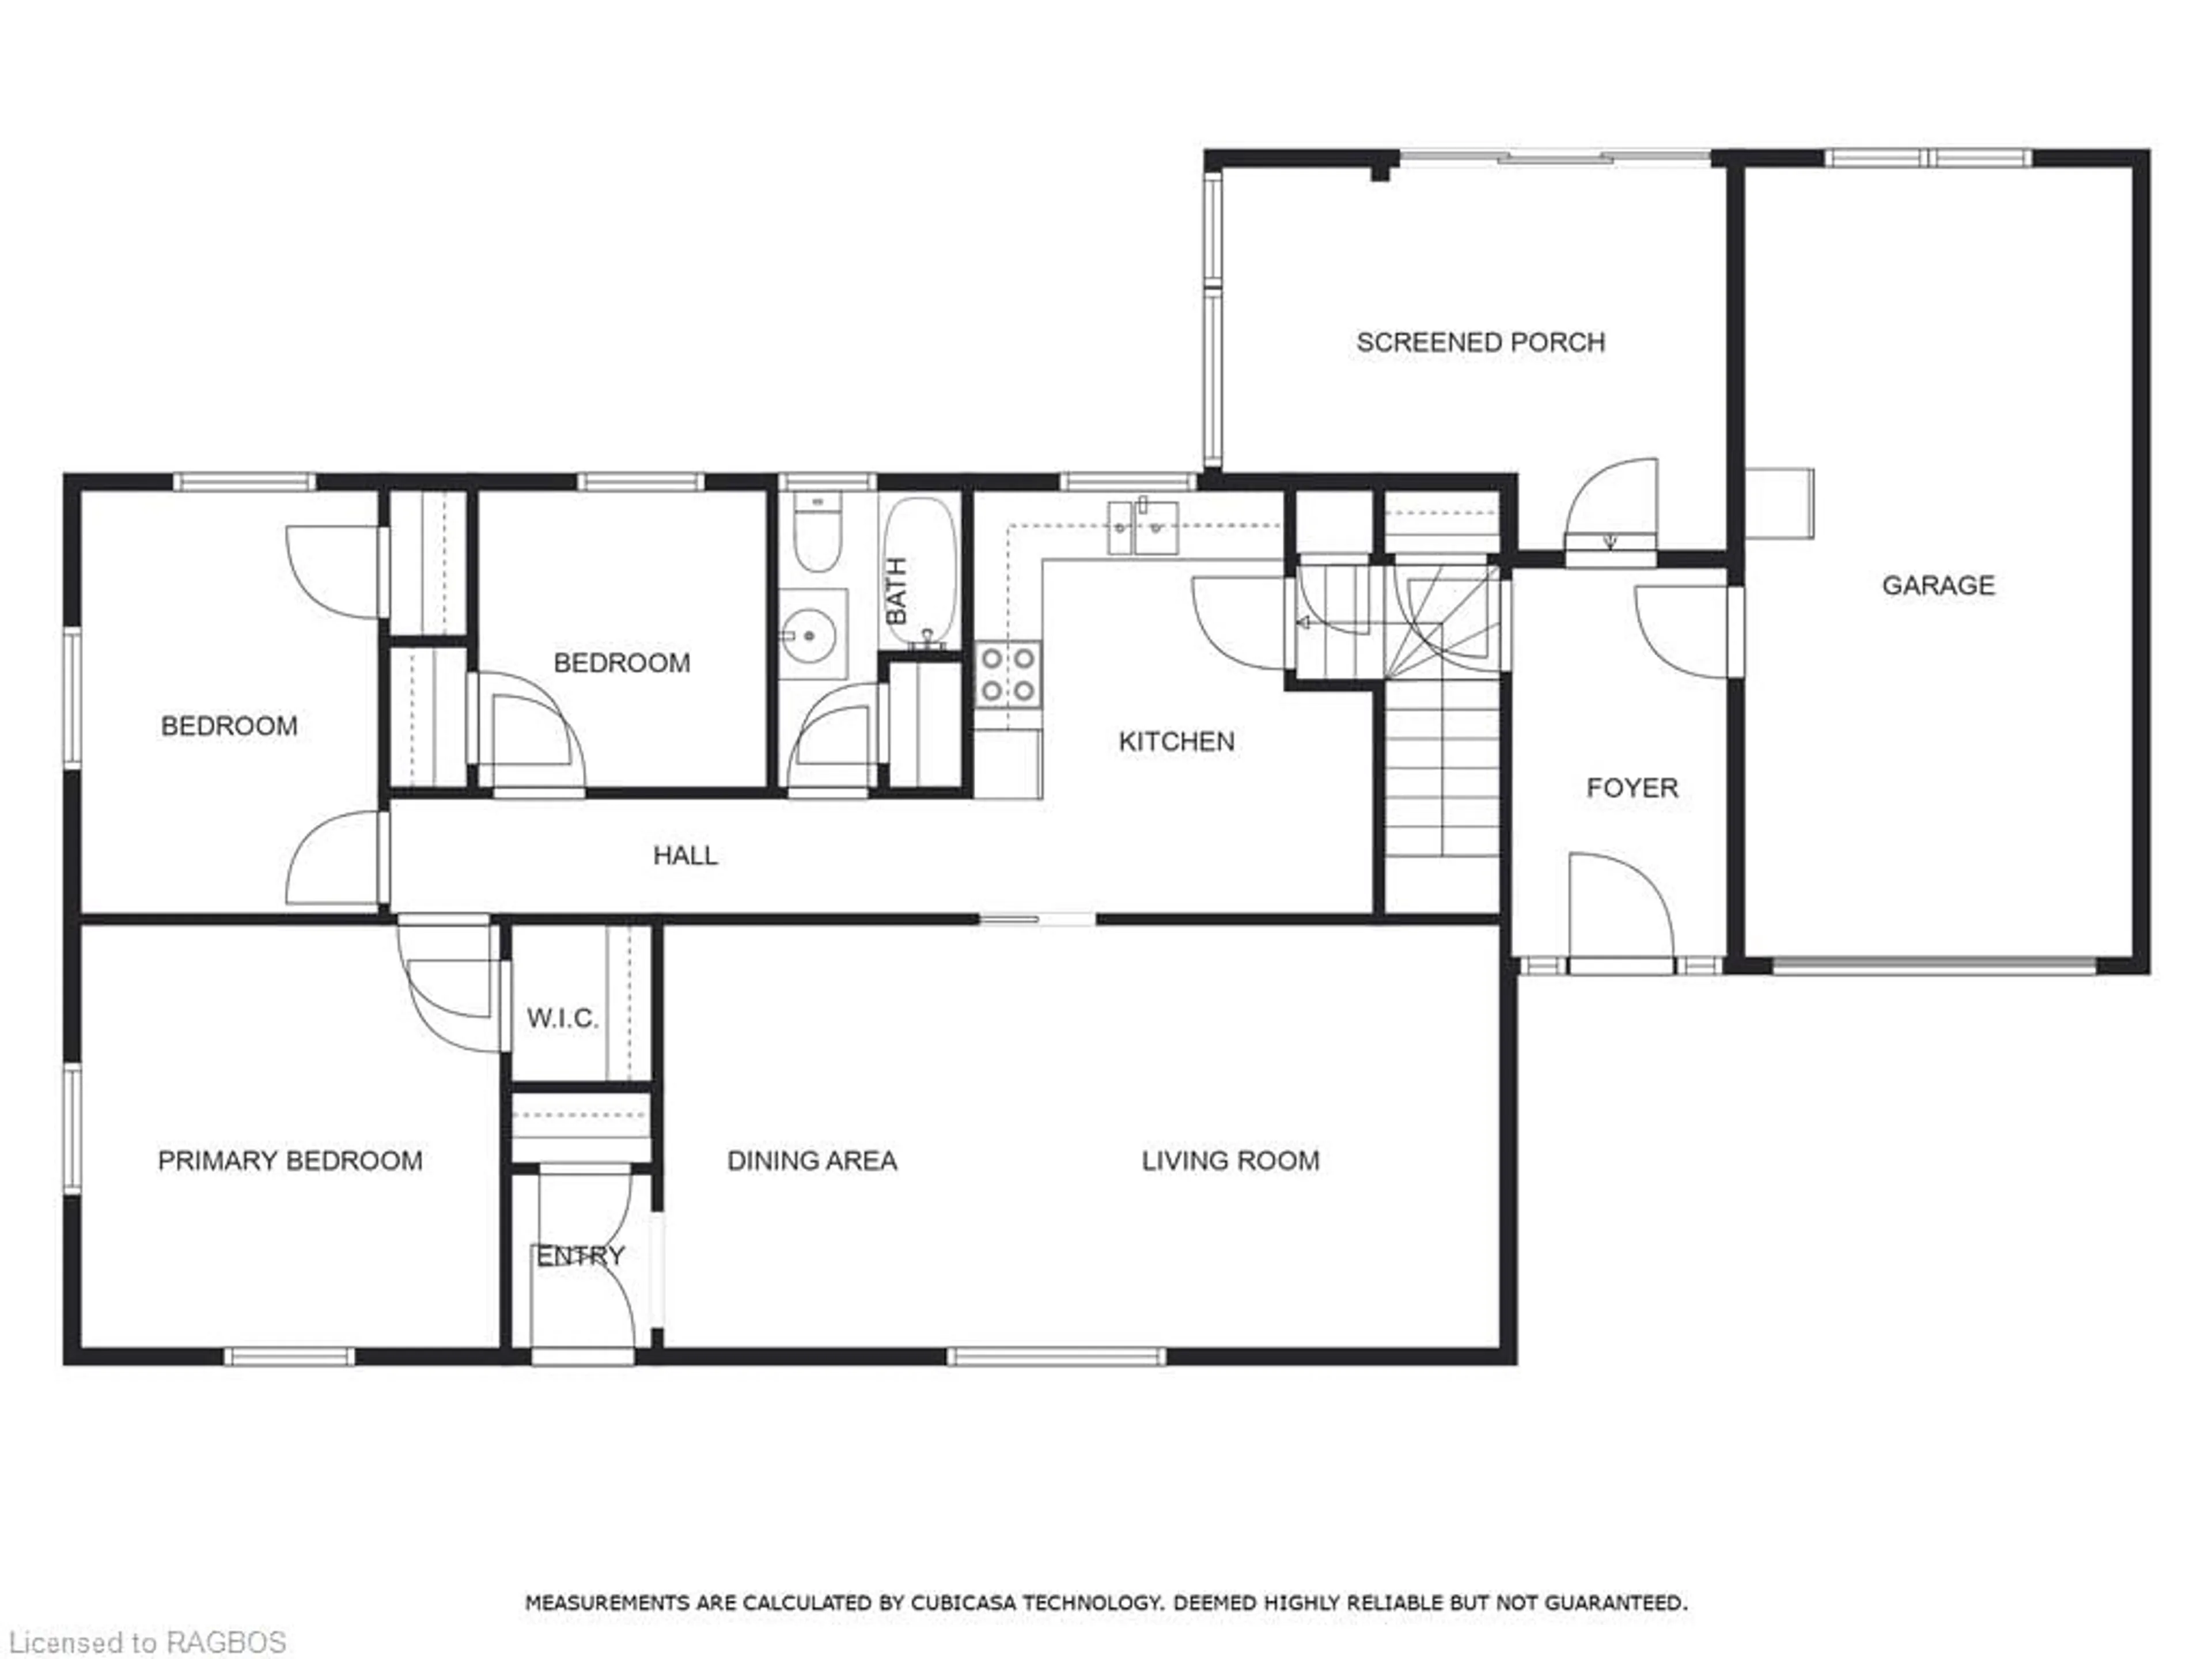 Floor plan for 357 5th Ave, Hanover Ontario N4N 2C6